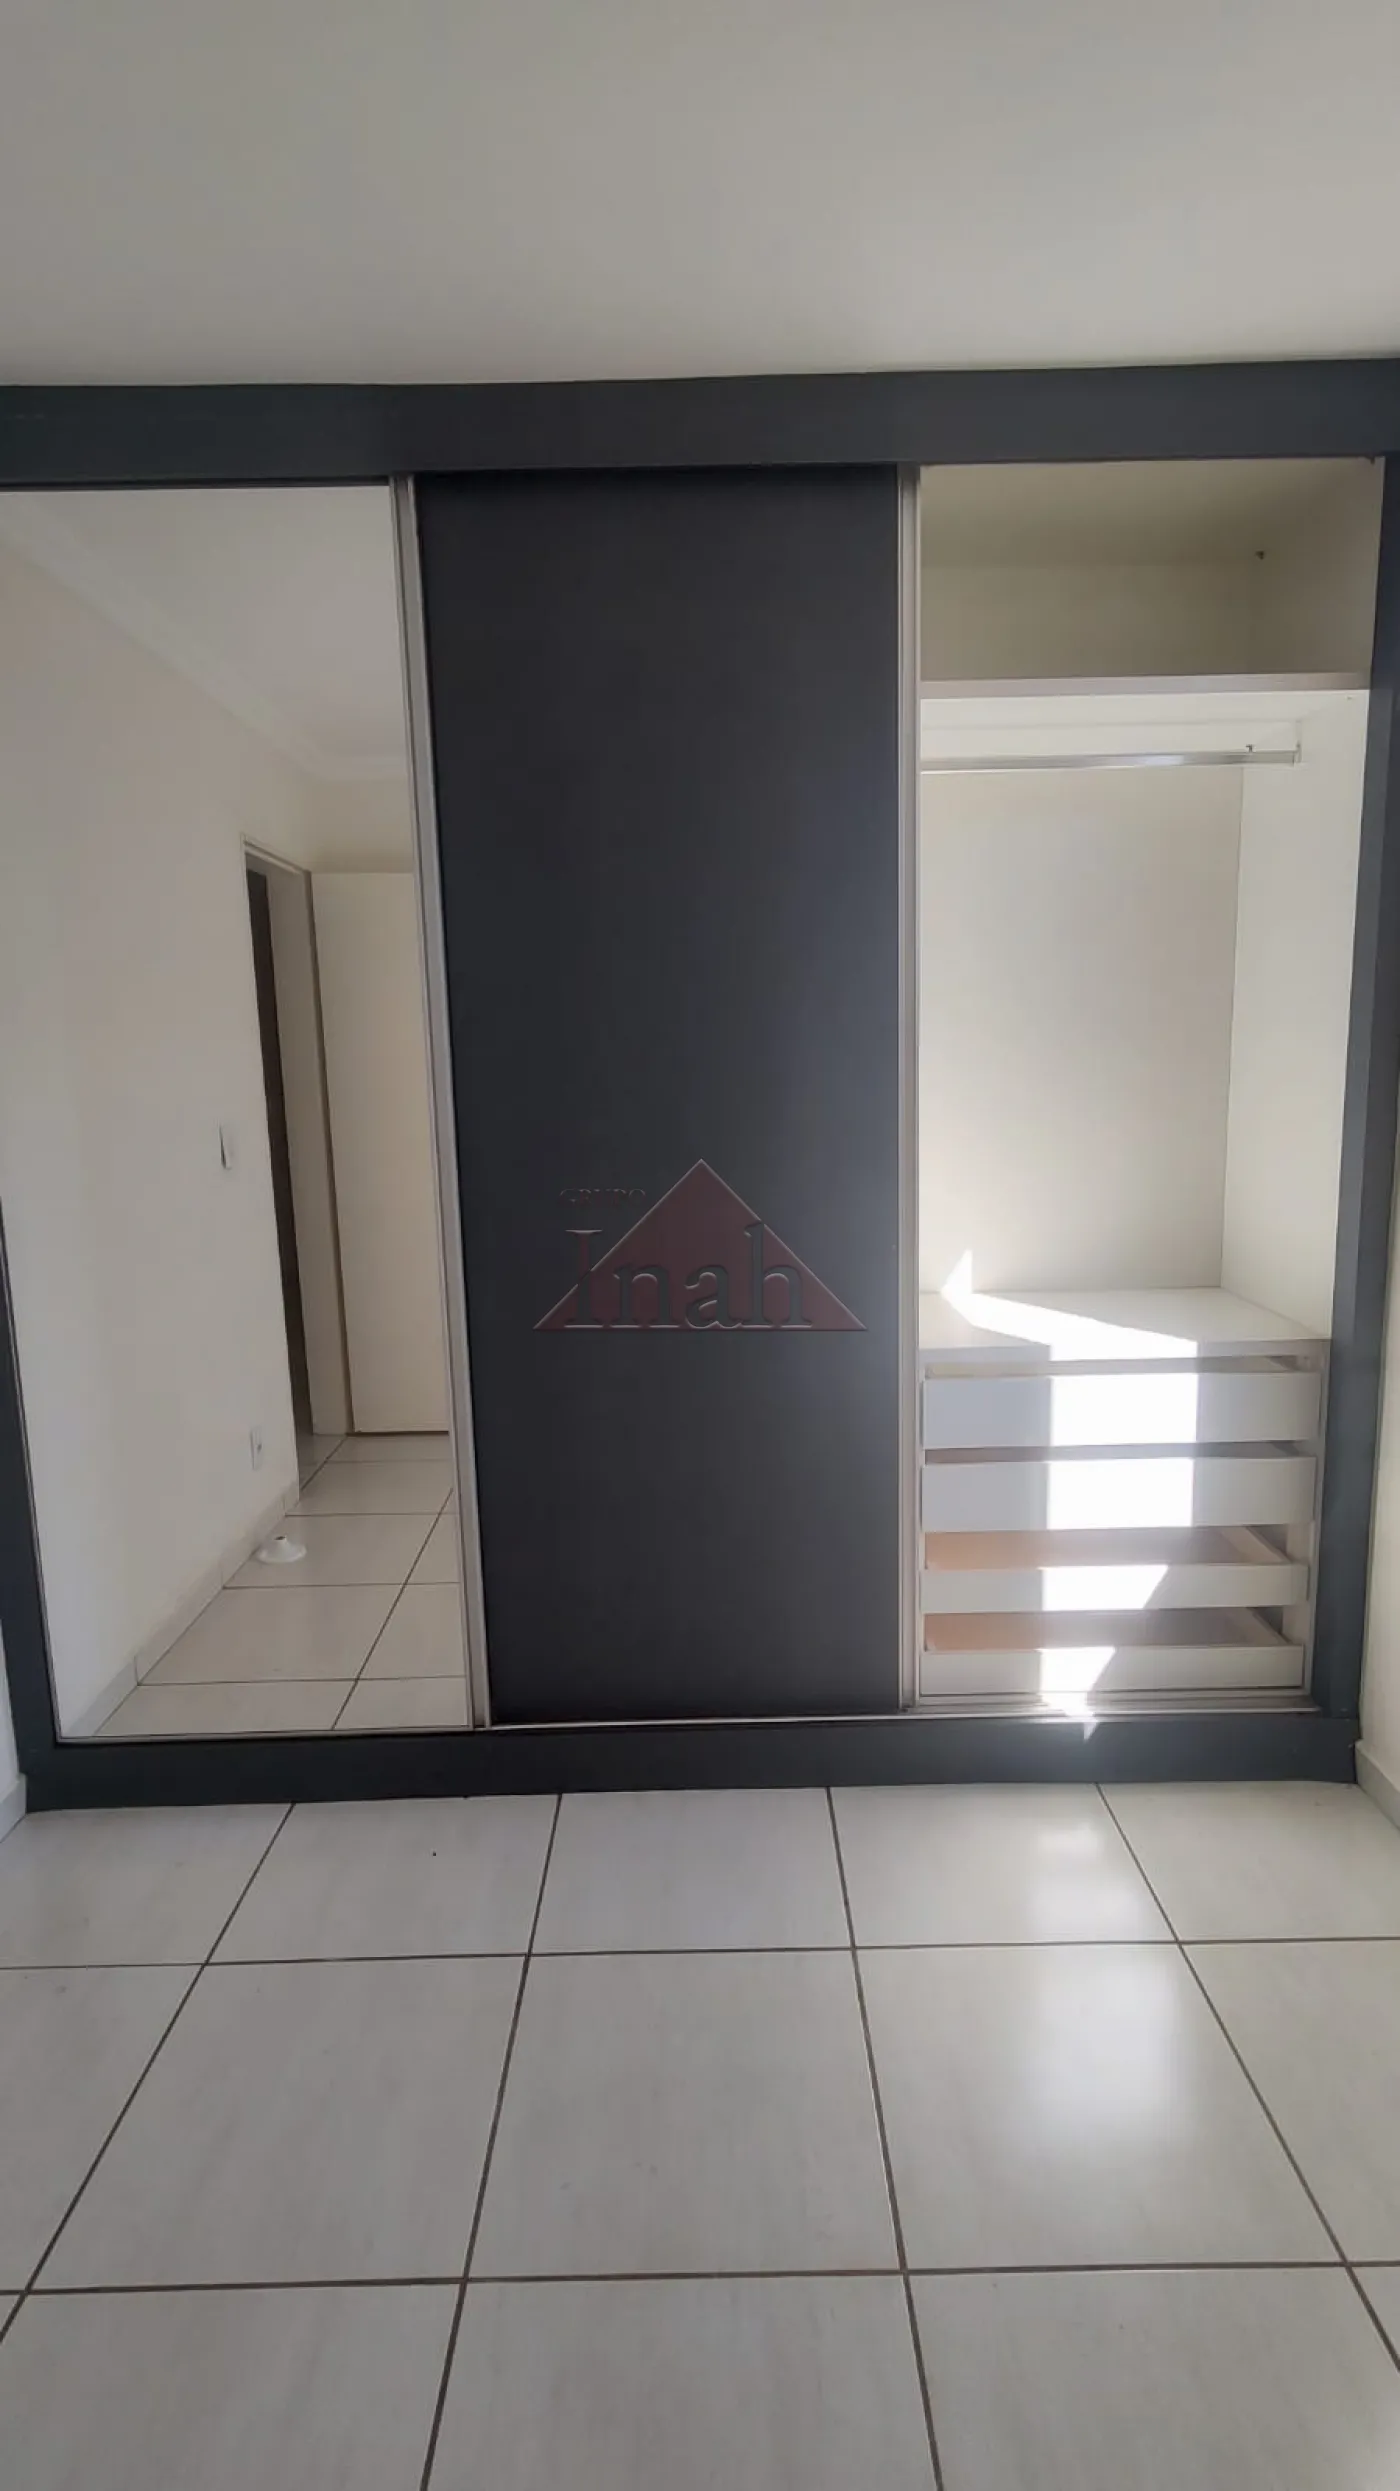 Alugar Apartamentos / Apartamento em Ribeirão Preto R$ 800,00 - Foto 8